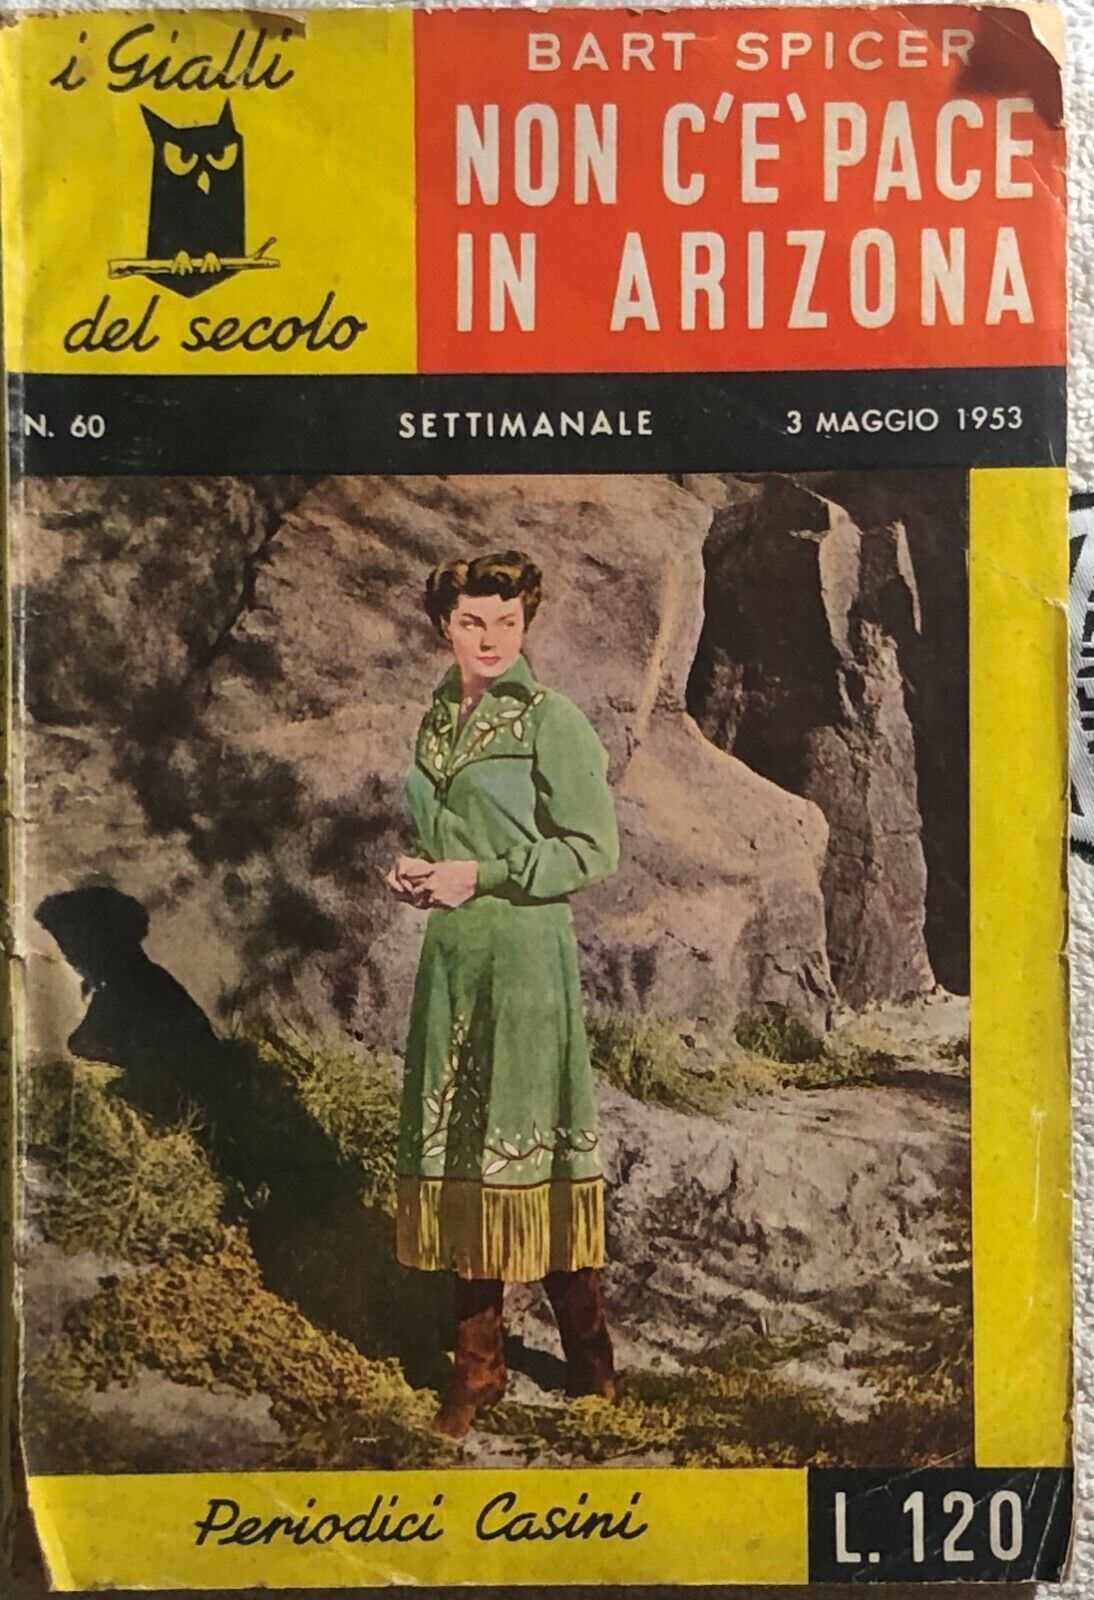 Non c?? pace in Arizona di Bart Spicer,  1953,  Periodici Casini